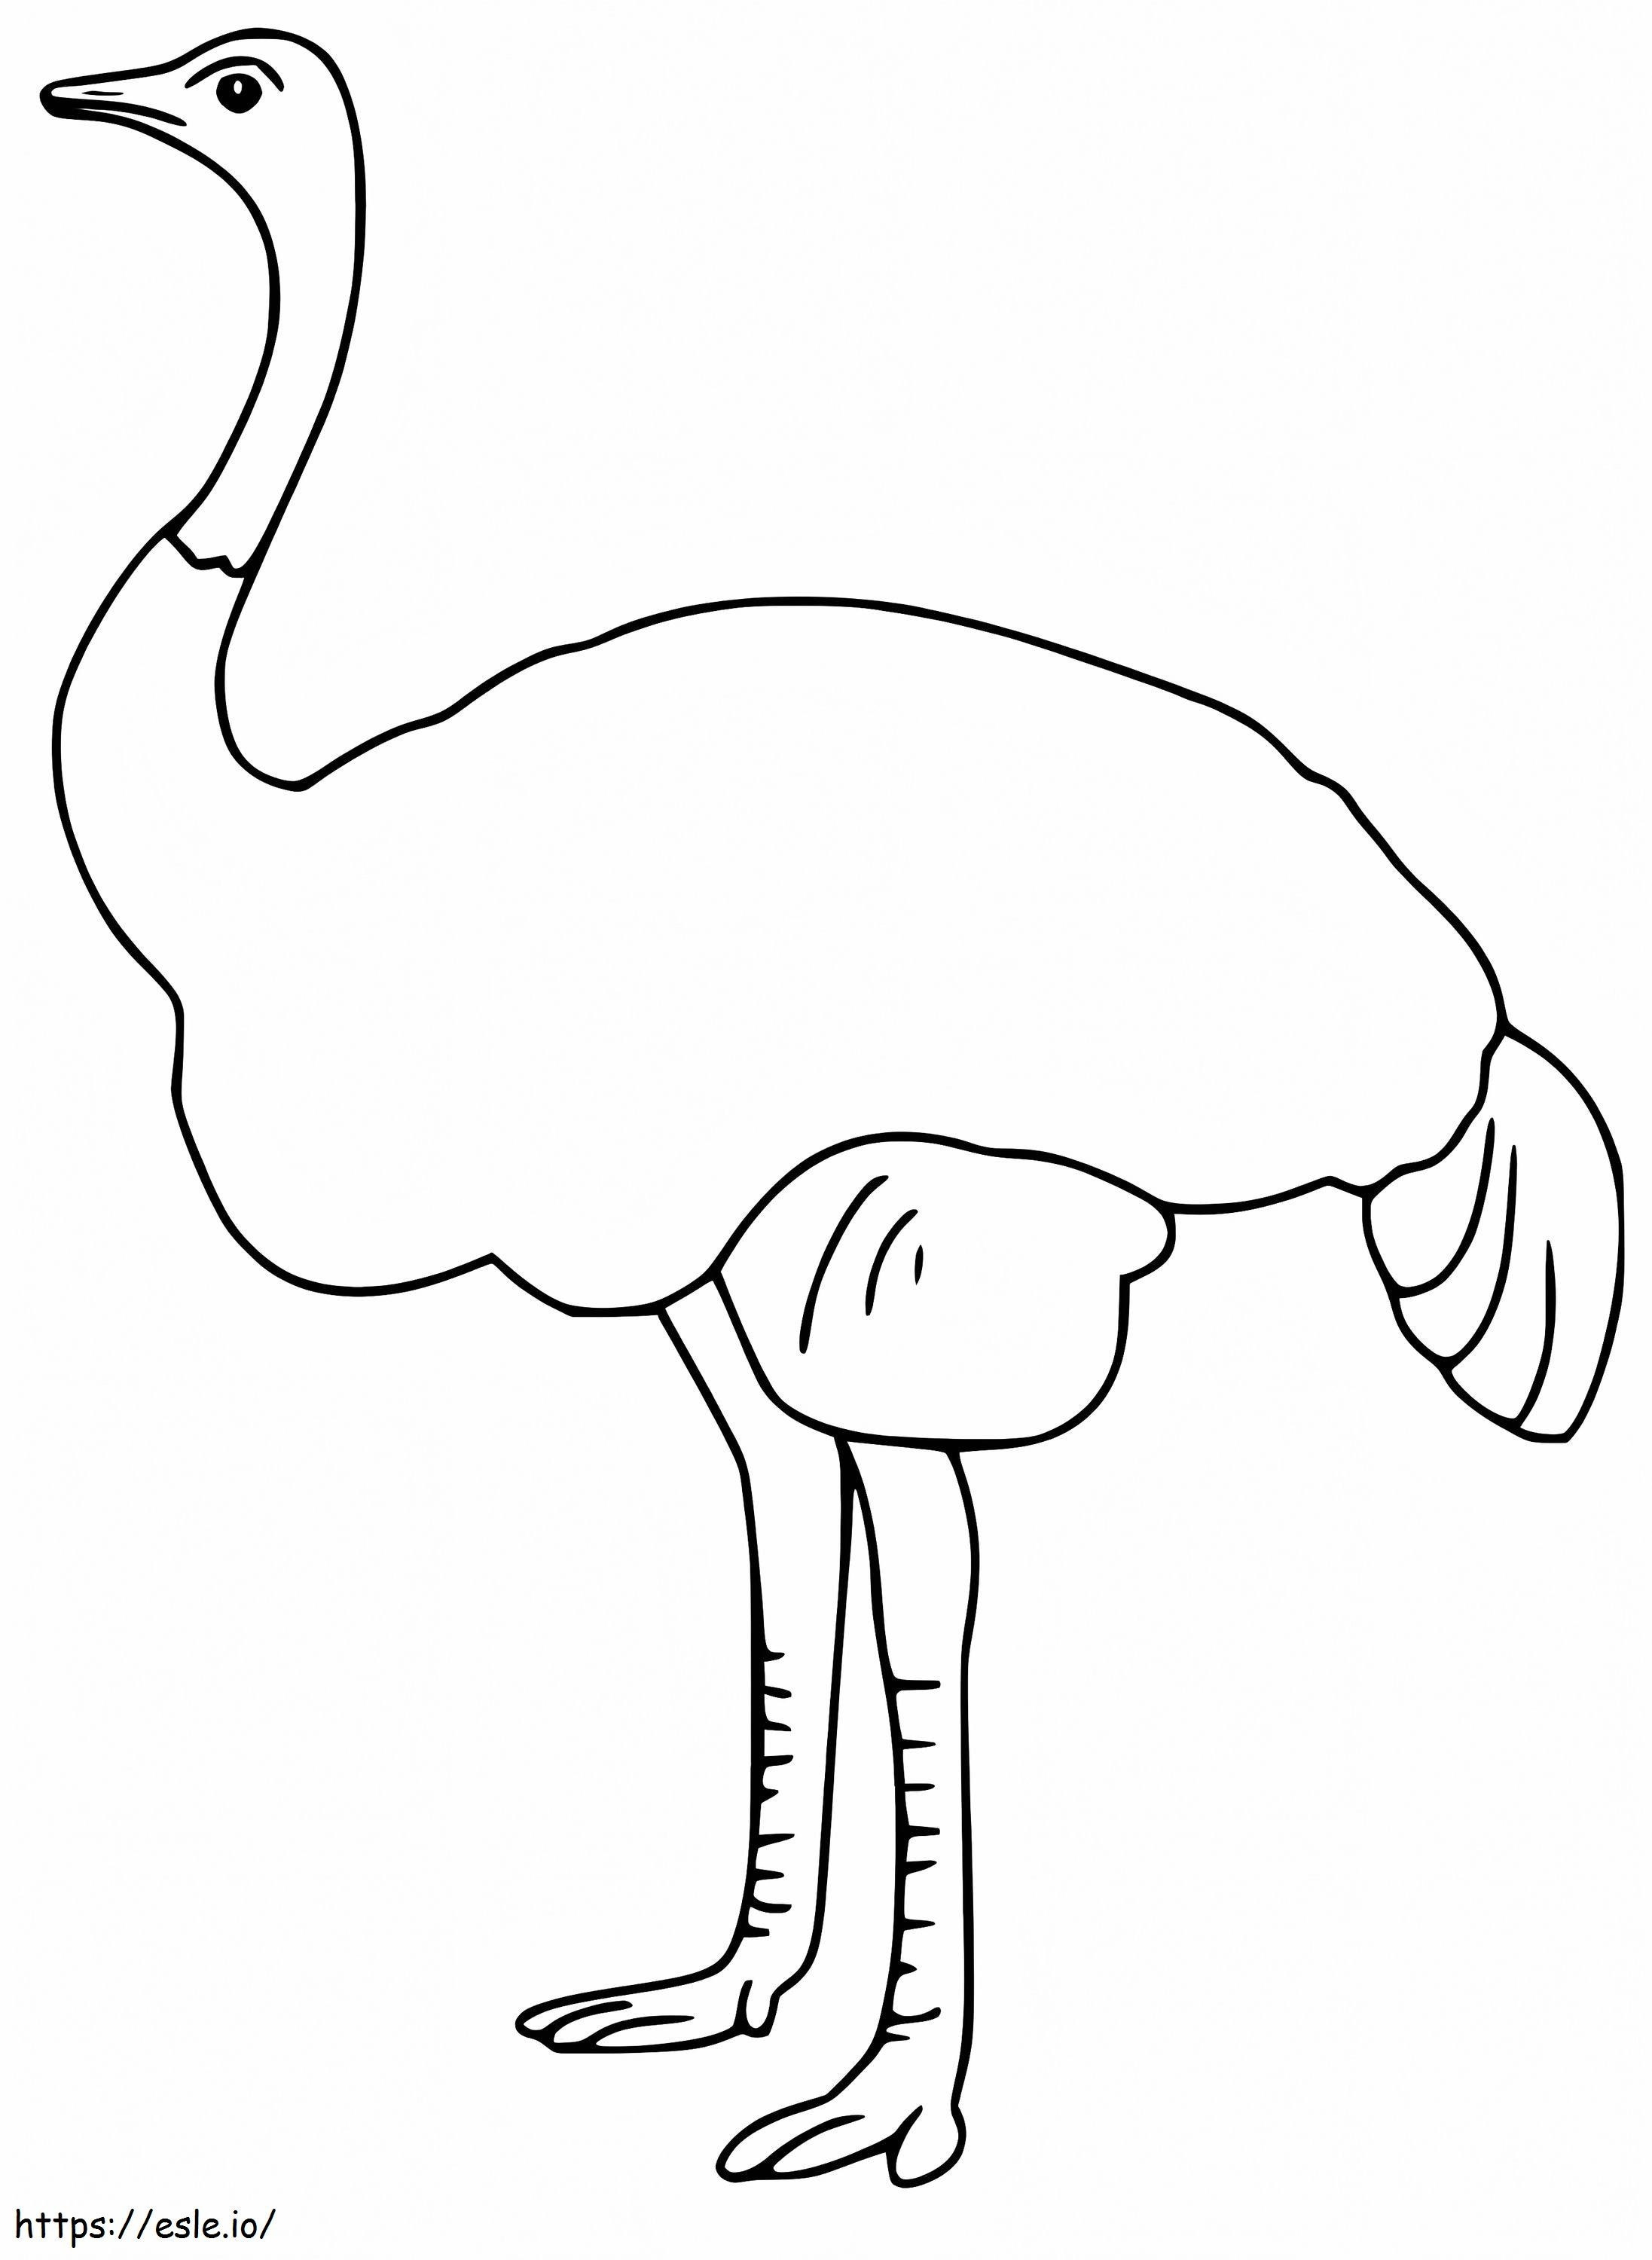 Un simplu emu de colorat